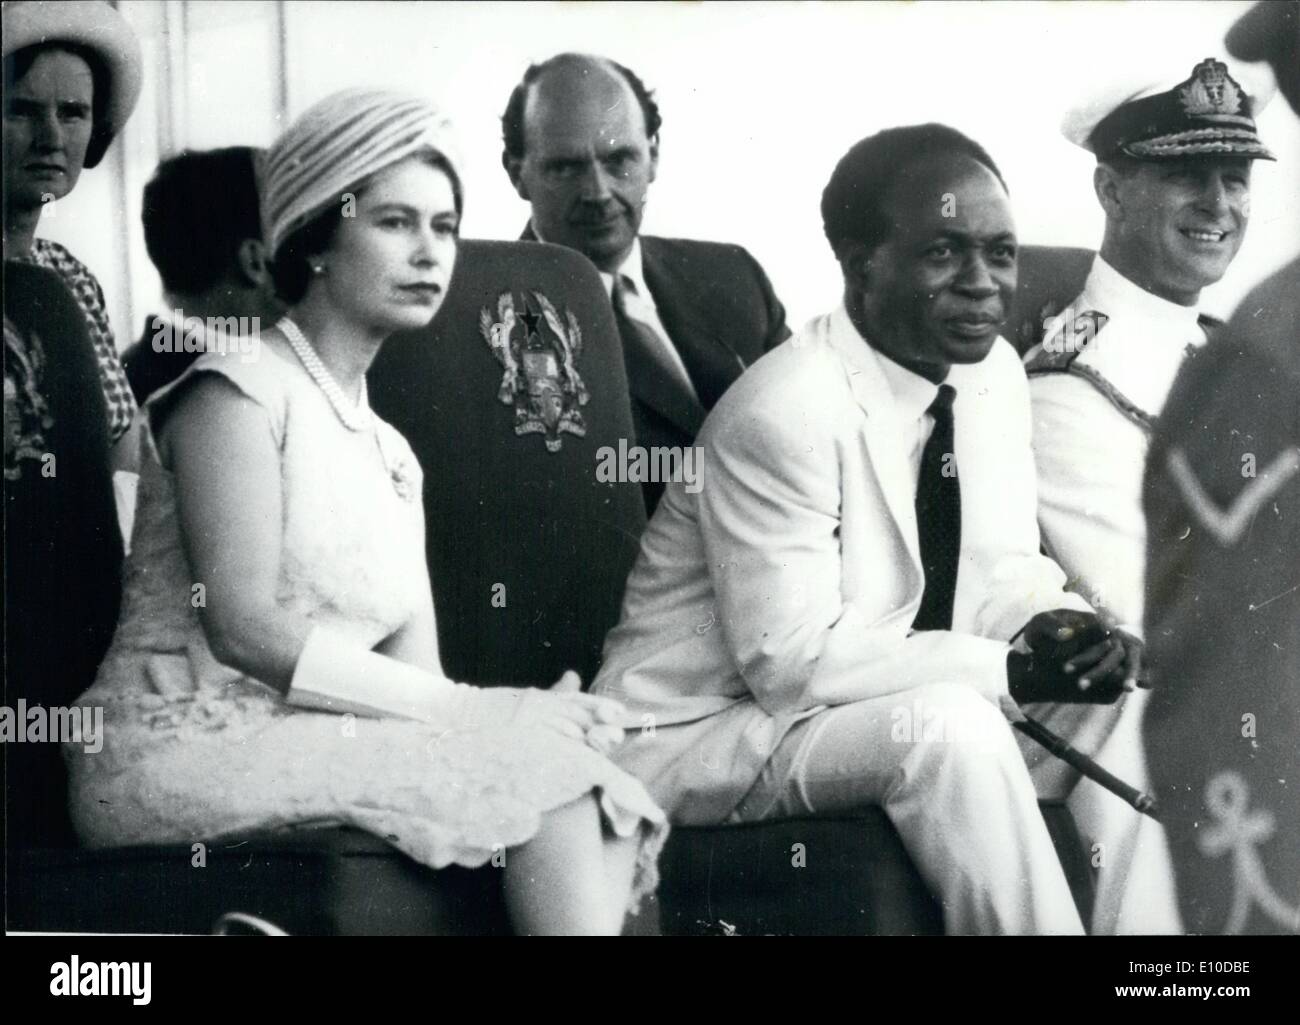 Le 28 avril 1972 - 28 avril 1972 Décès de M. Nkrumah. L'ancien Président du Ghana, le Dr Kwame Nkrumah, l'homme qui a conduit le Ghana à l'indépendance, mais fut destitué par